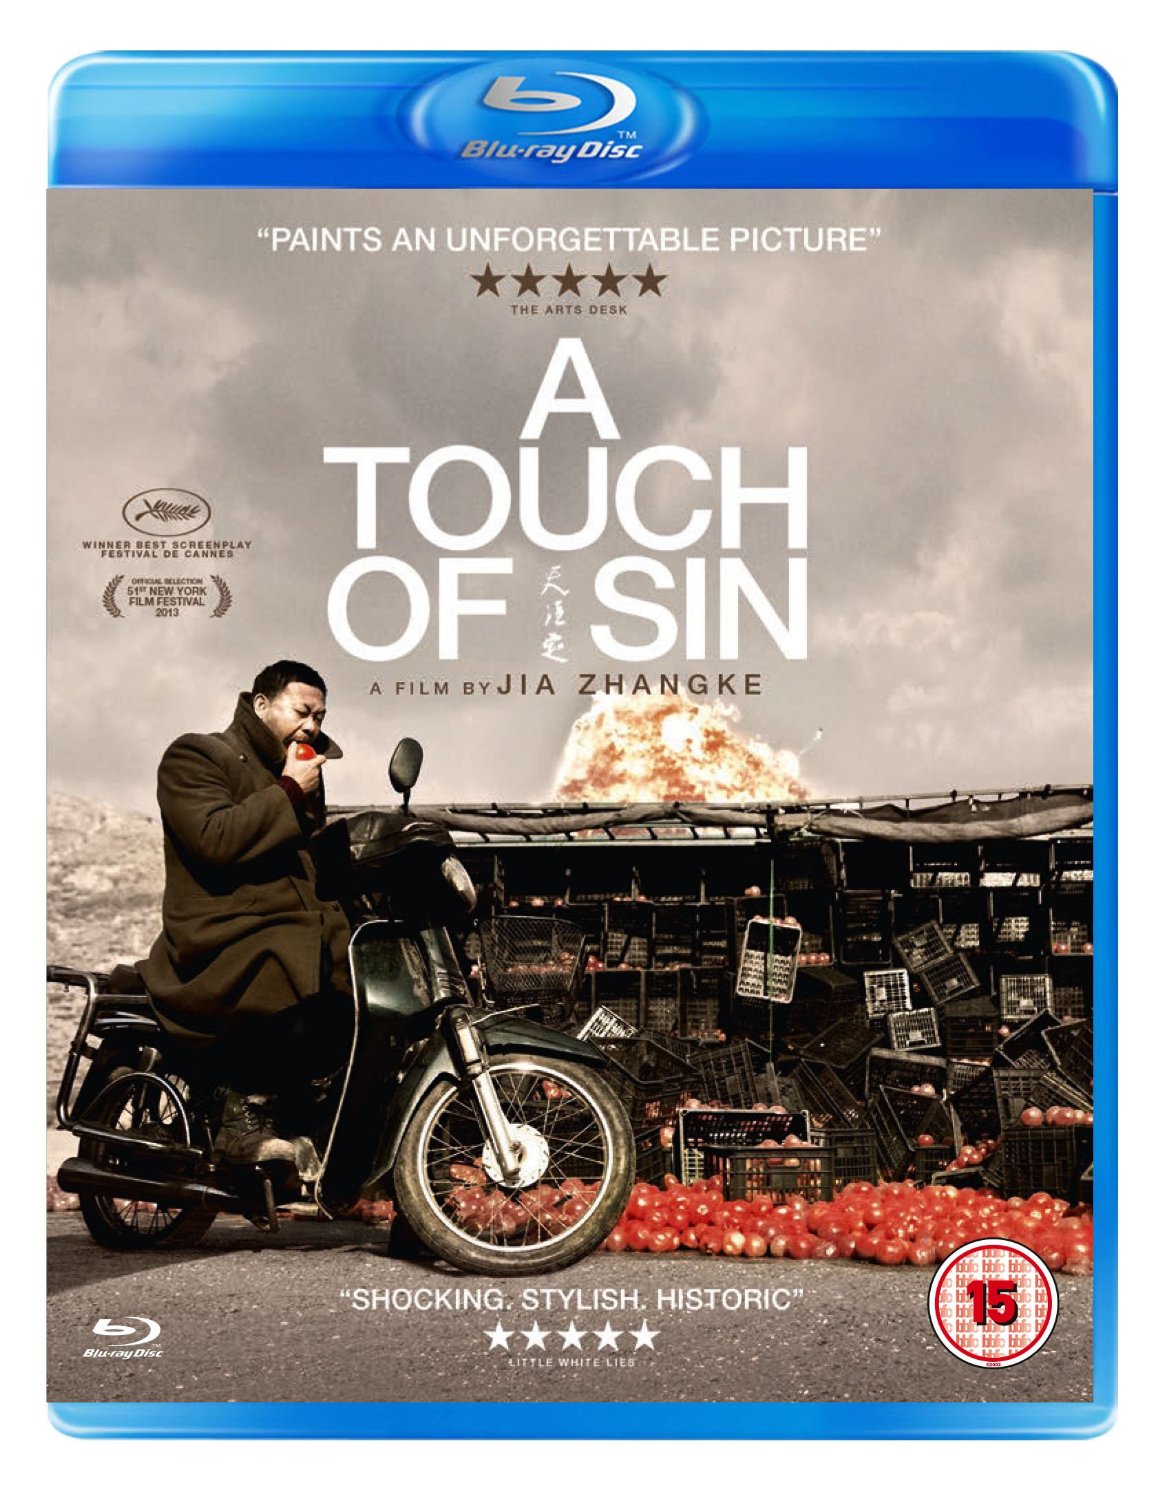 天注定 | 英版原盘[DIY简繁+简繁英双语字幕]| 贾樟柯作品 A Touch of Sin 2013 1080p GBR Blu-ray AVC DTS-HD MA 5.1-IWUBEN@OurBits[43.55GB]